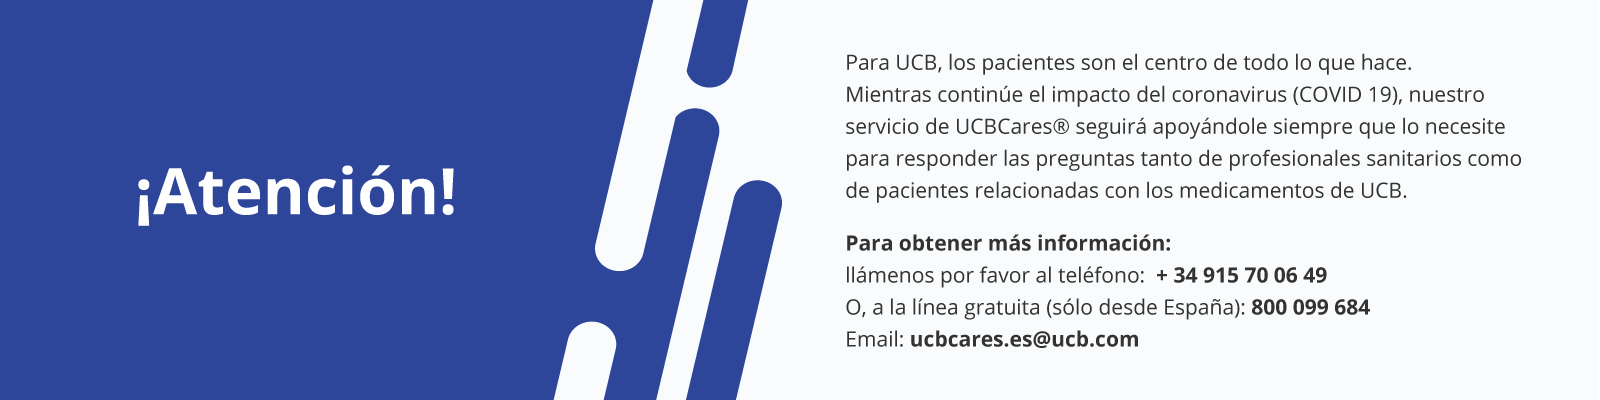 atención pacientes ucb